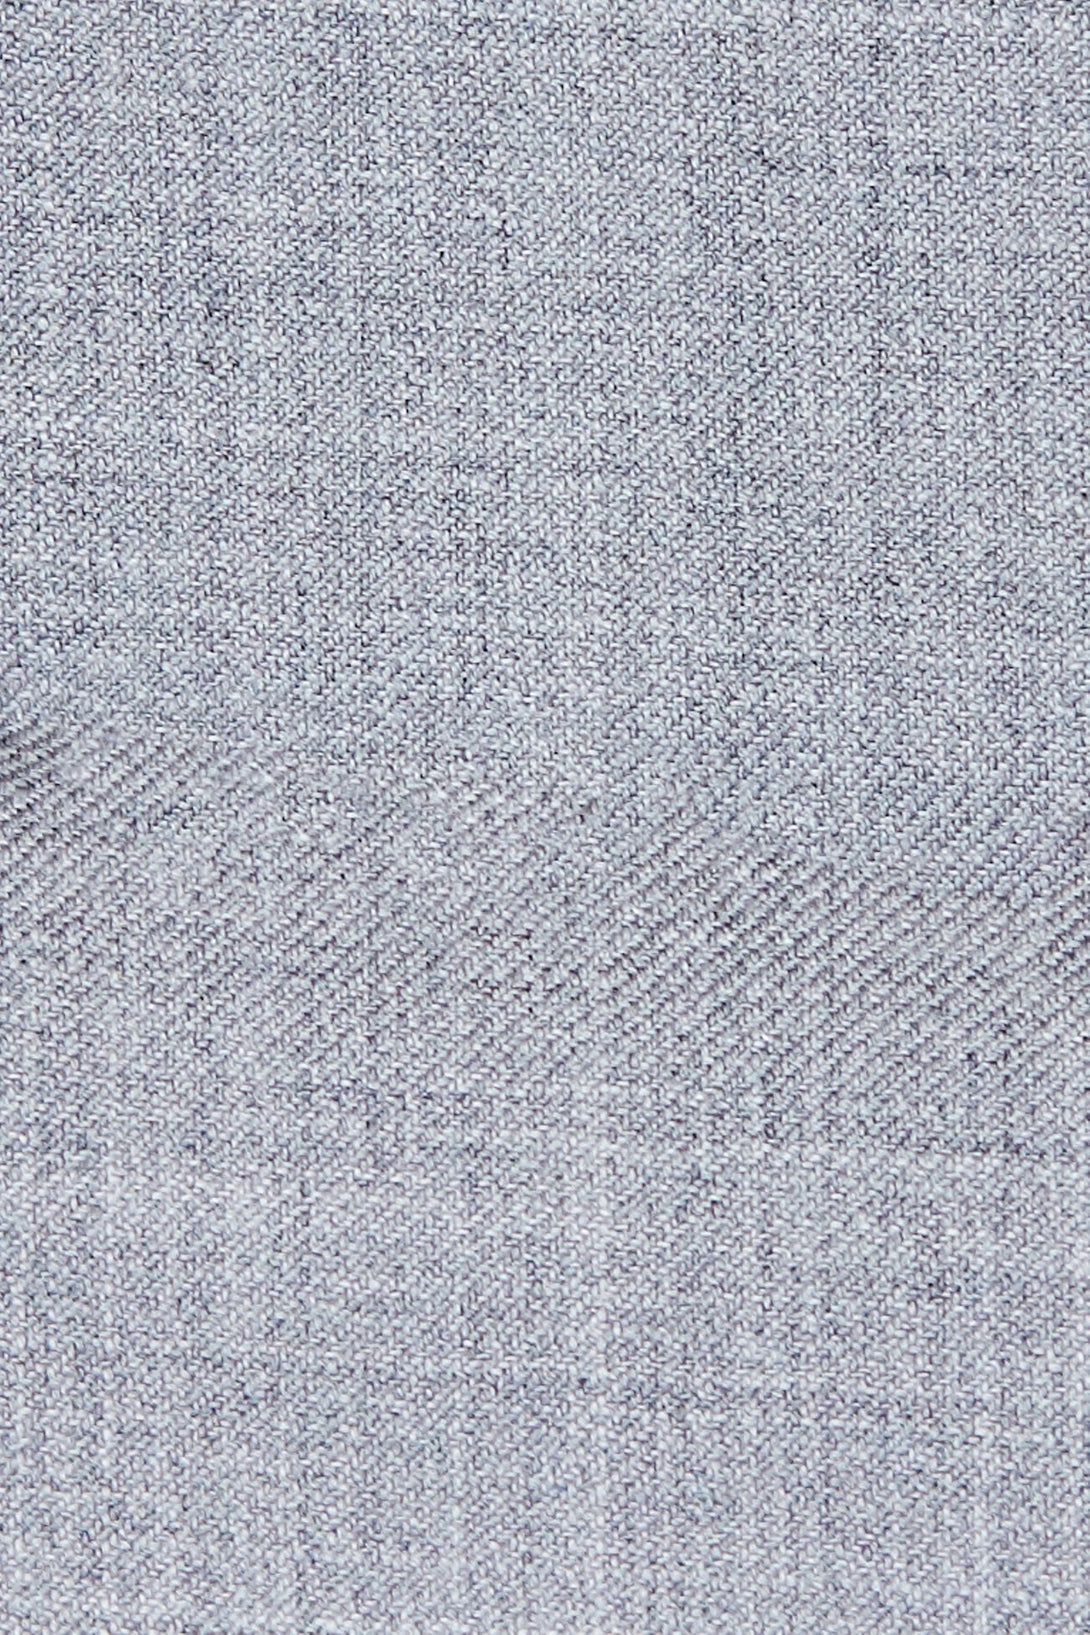 Light Grey 100% Wool Vest-The Suit Spot